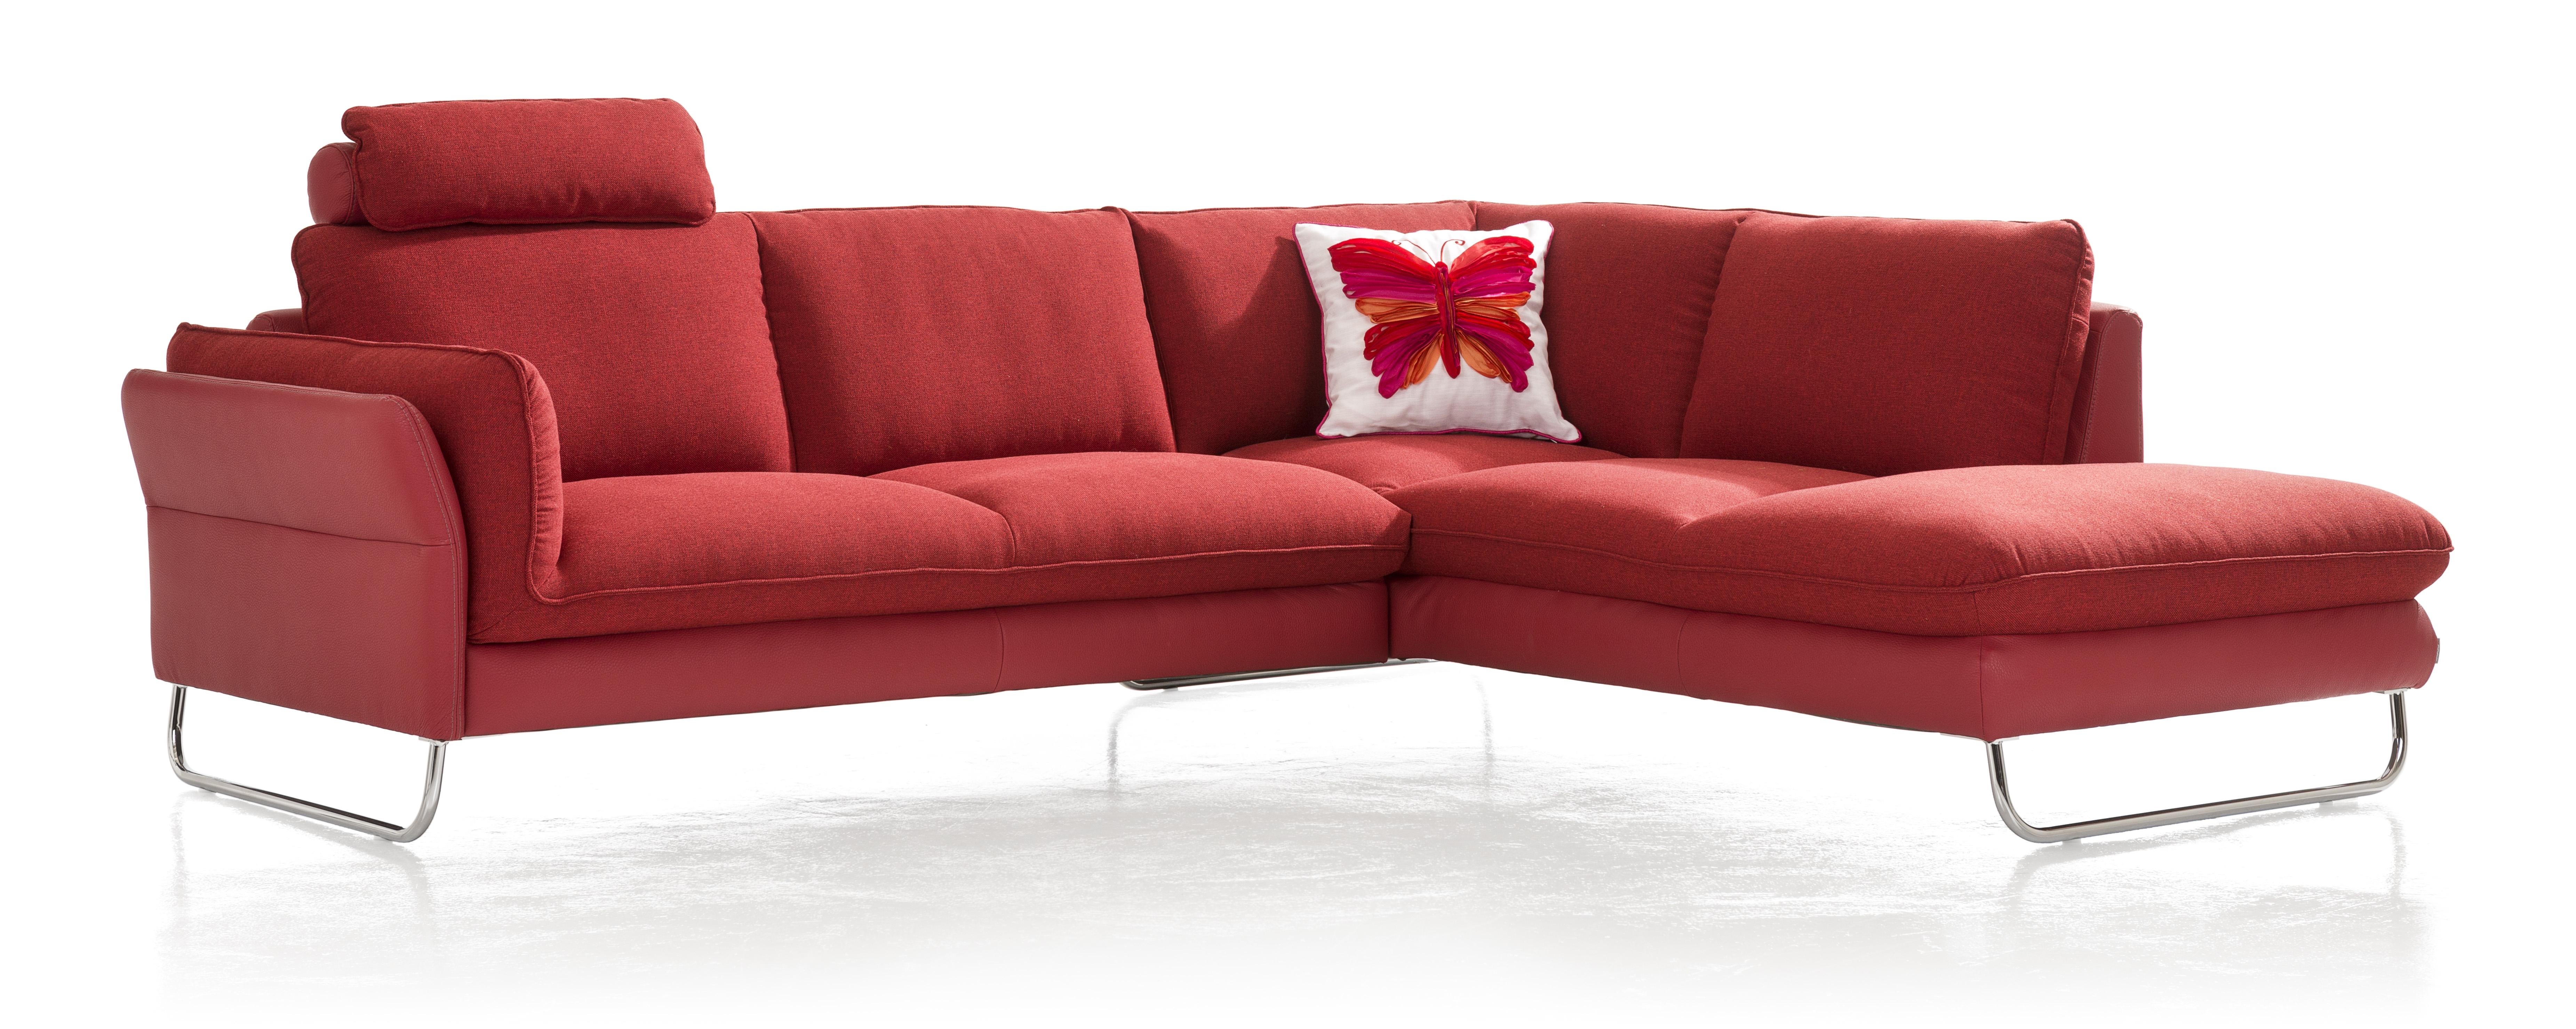 Rode sofa ‘Vivano’